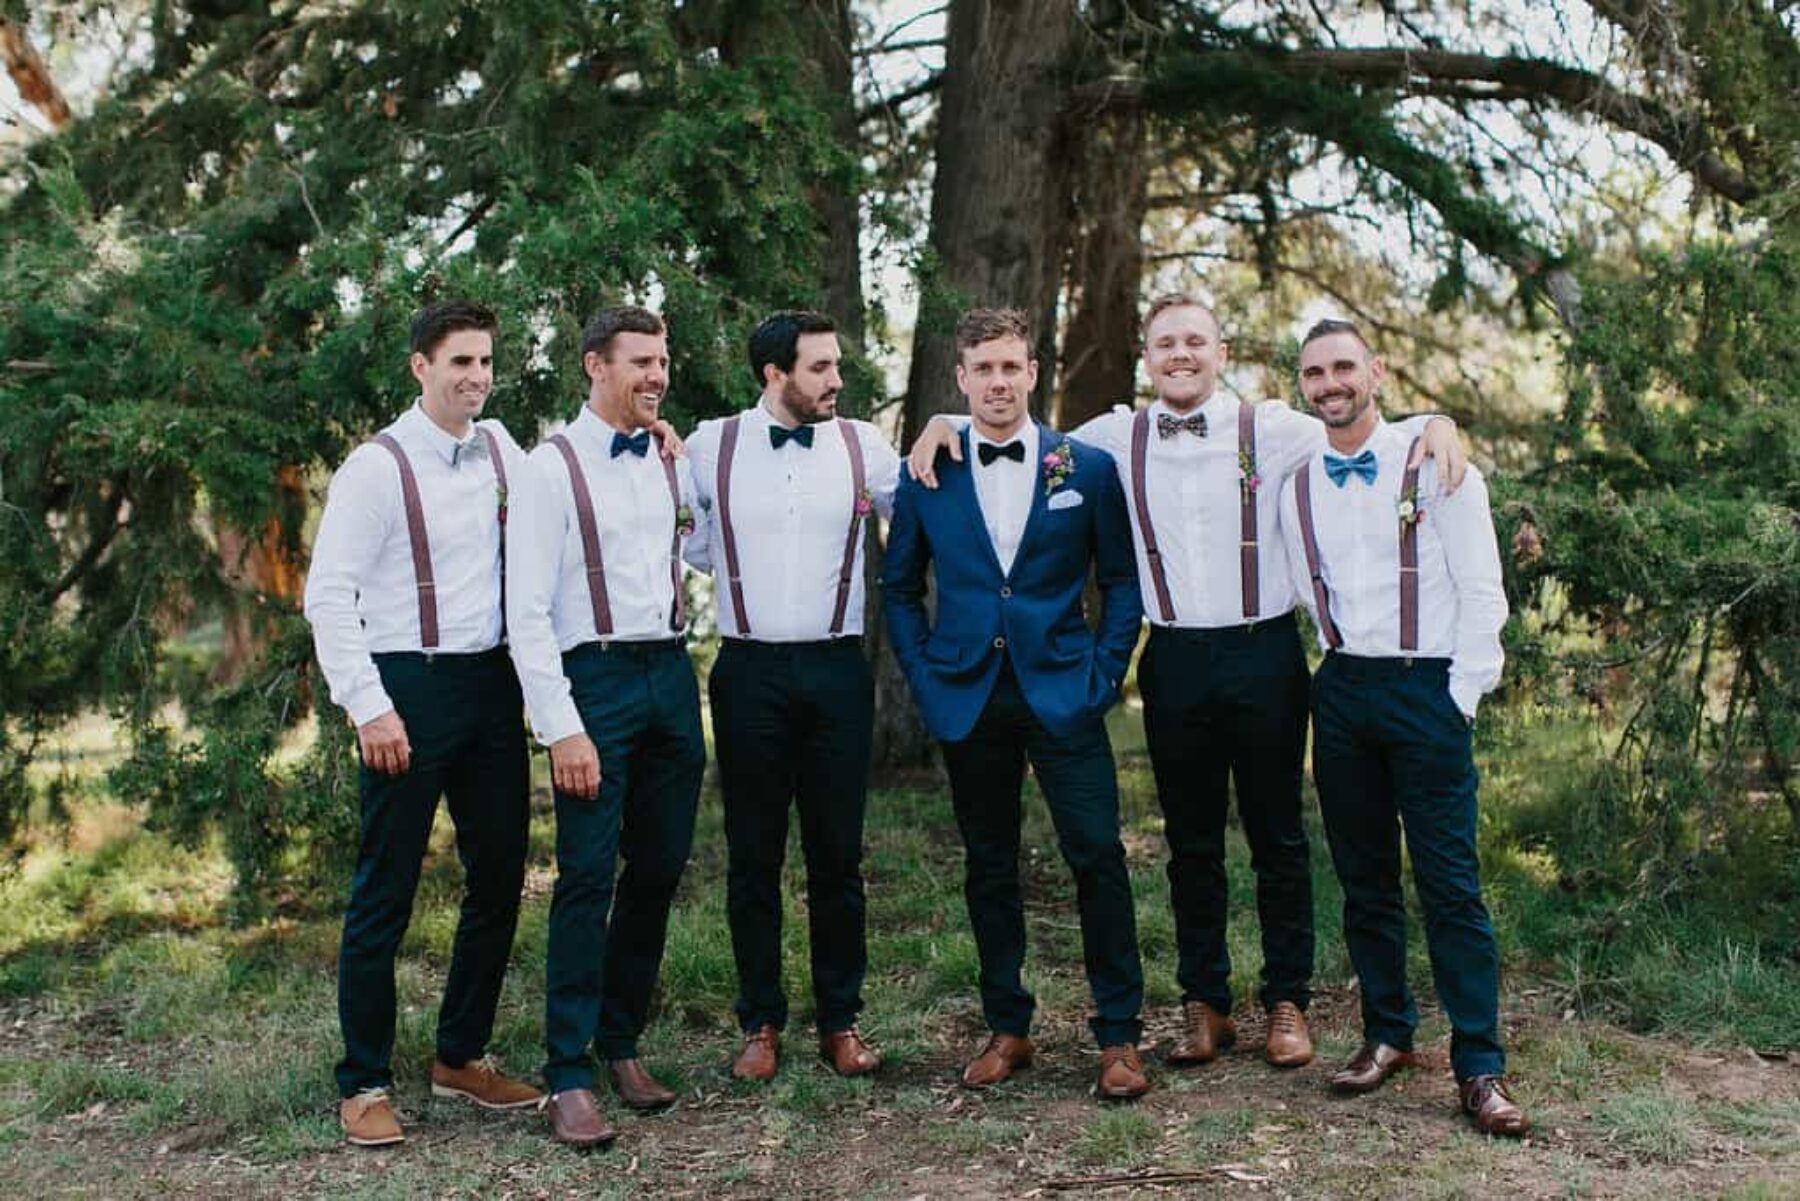 groomsmen in braces and bow ties